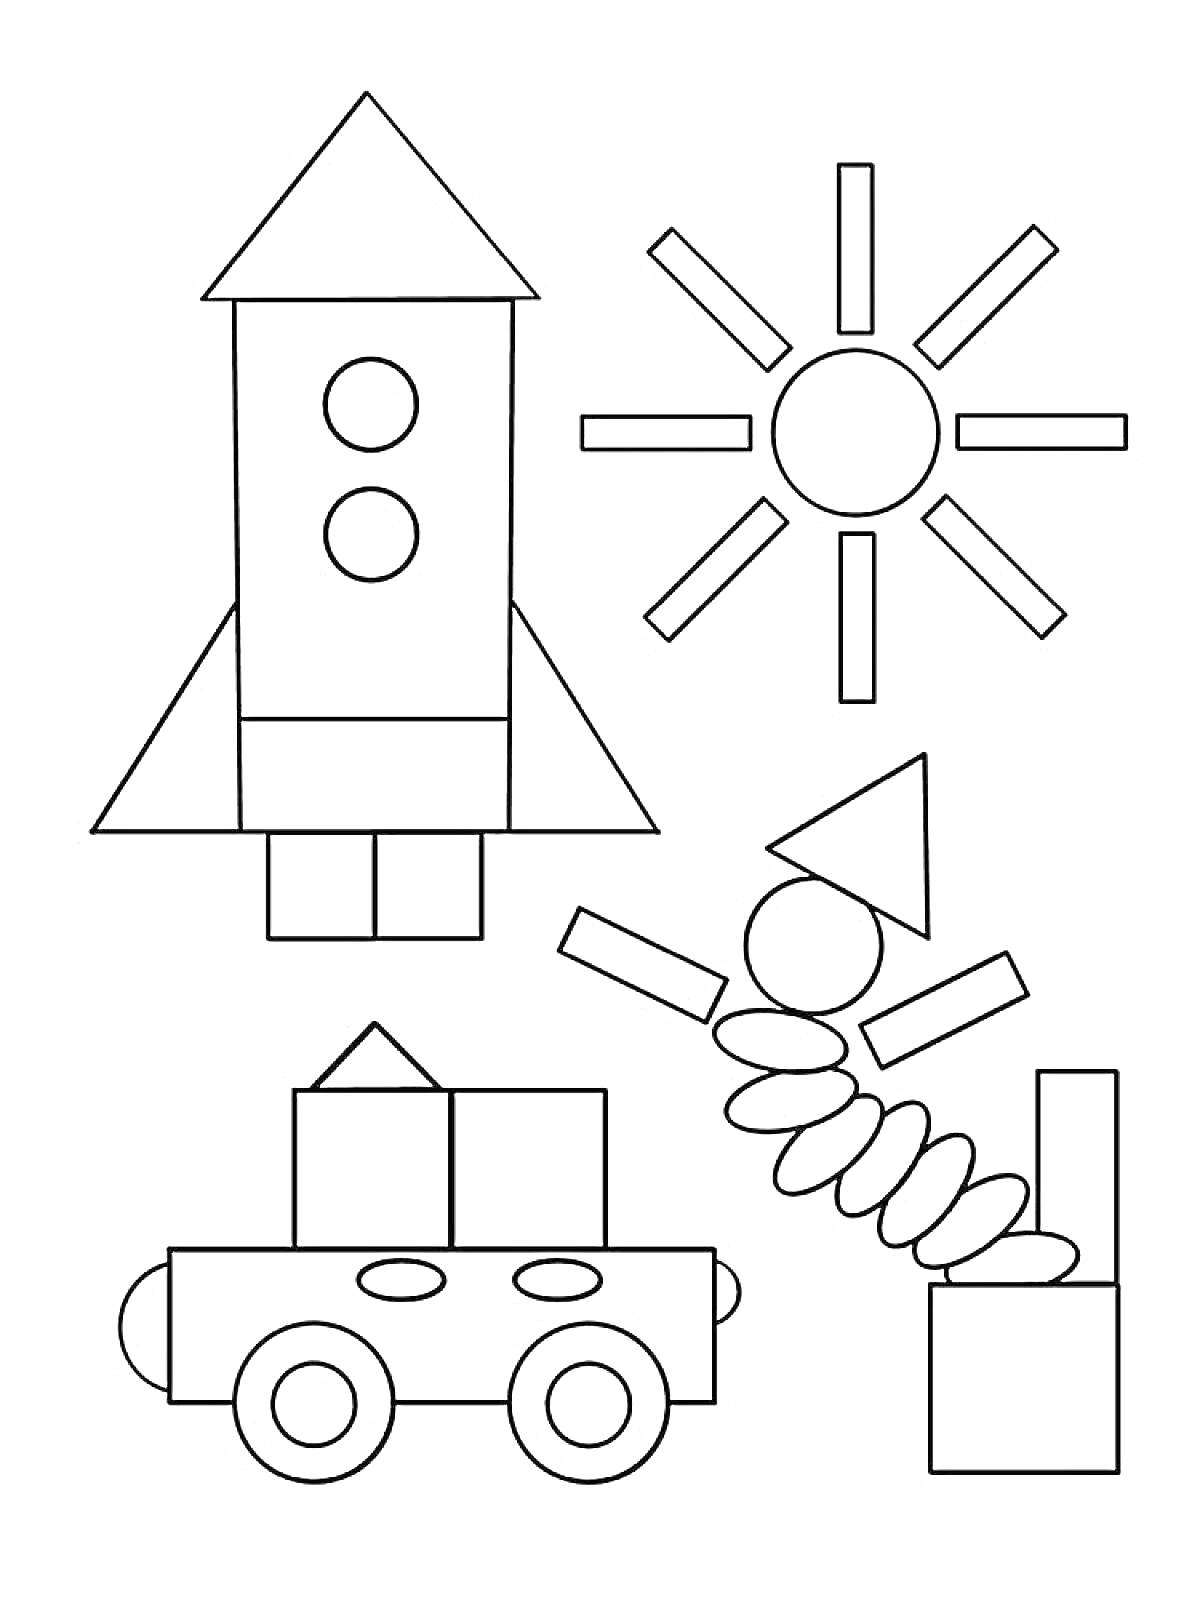 На раскраске изображено: Геометрические фигуры, Ракета, Солнце, Человек, Пружина, Круги, Треугольники, Квадраты, Прямоугольники